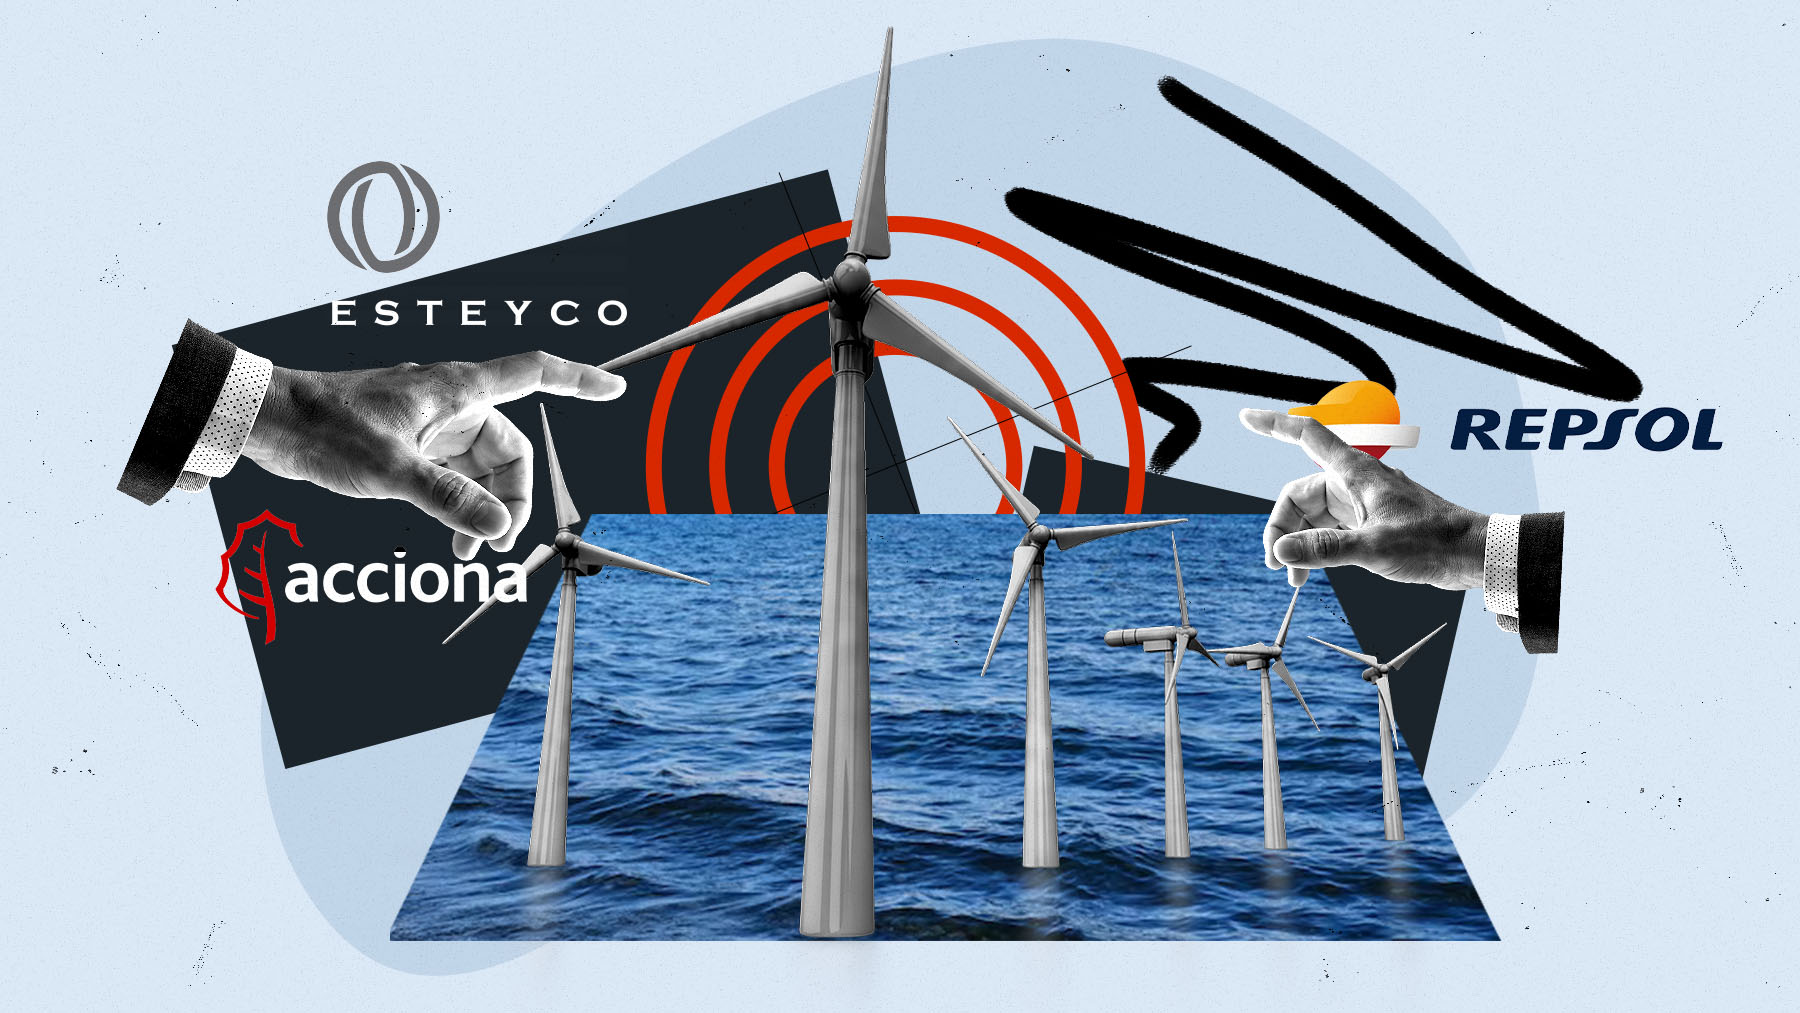 Esteyco y Acciona se unen a Repsol y apuestan por la eólica marina en La Coruña